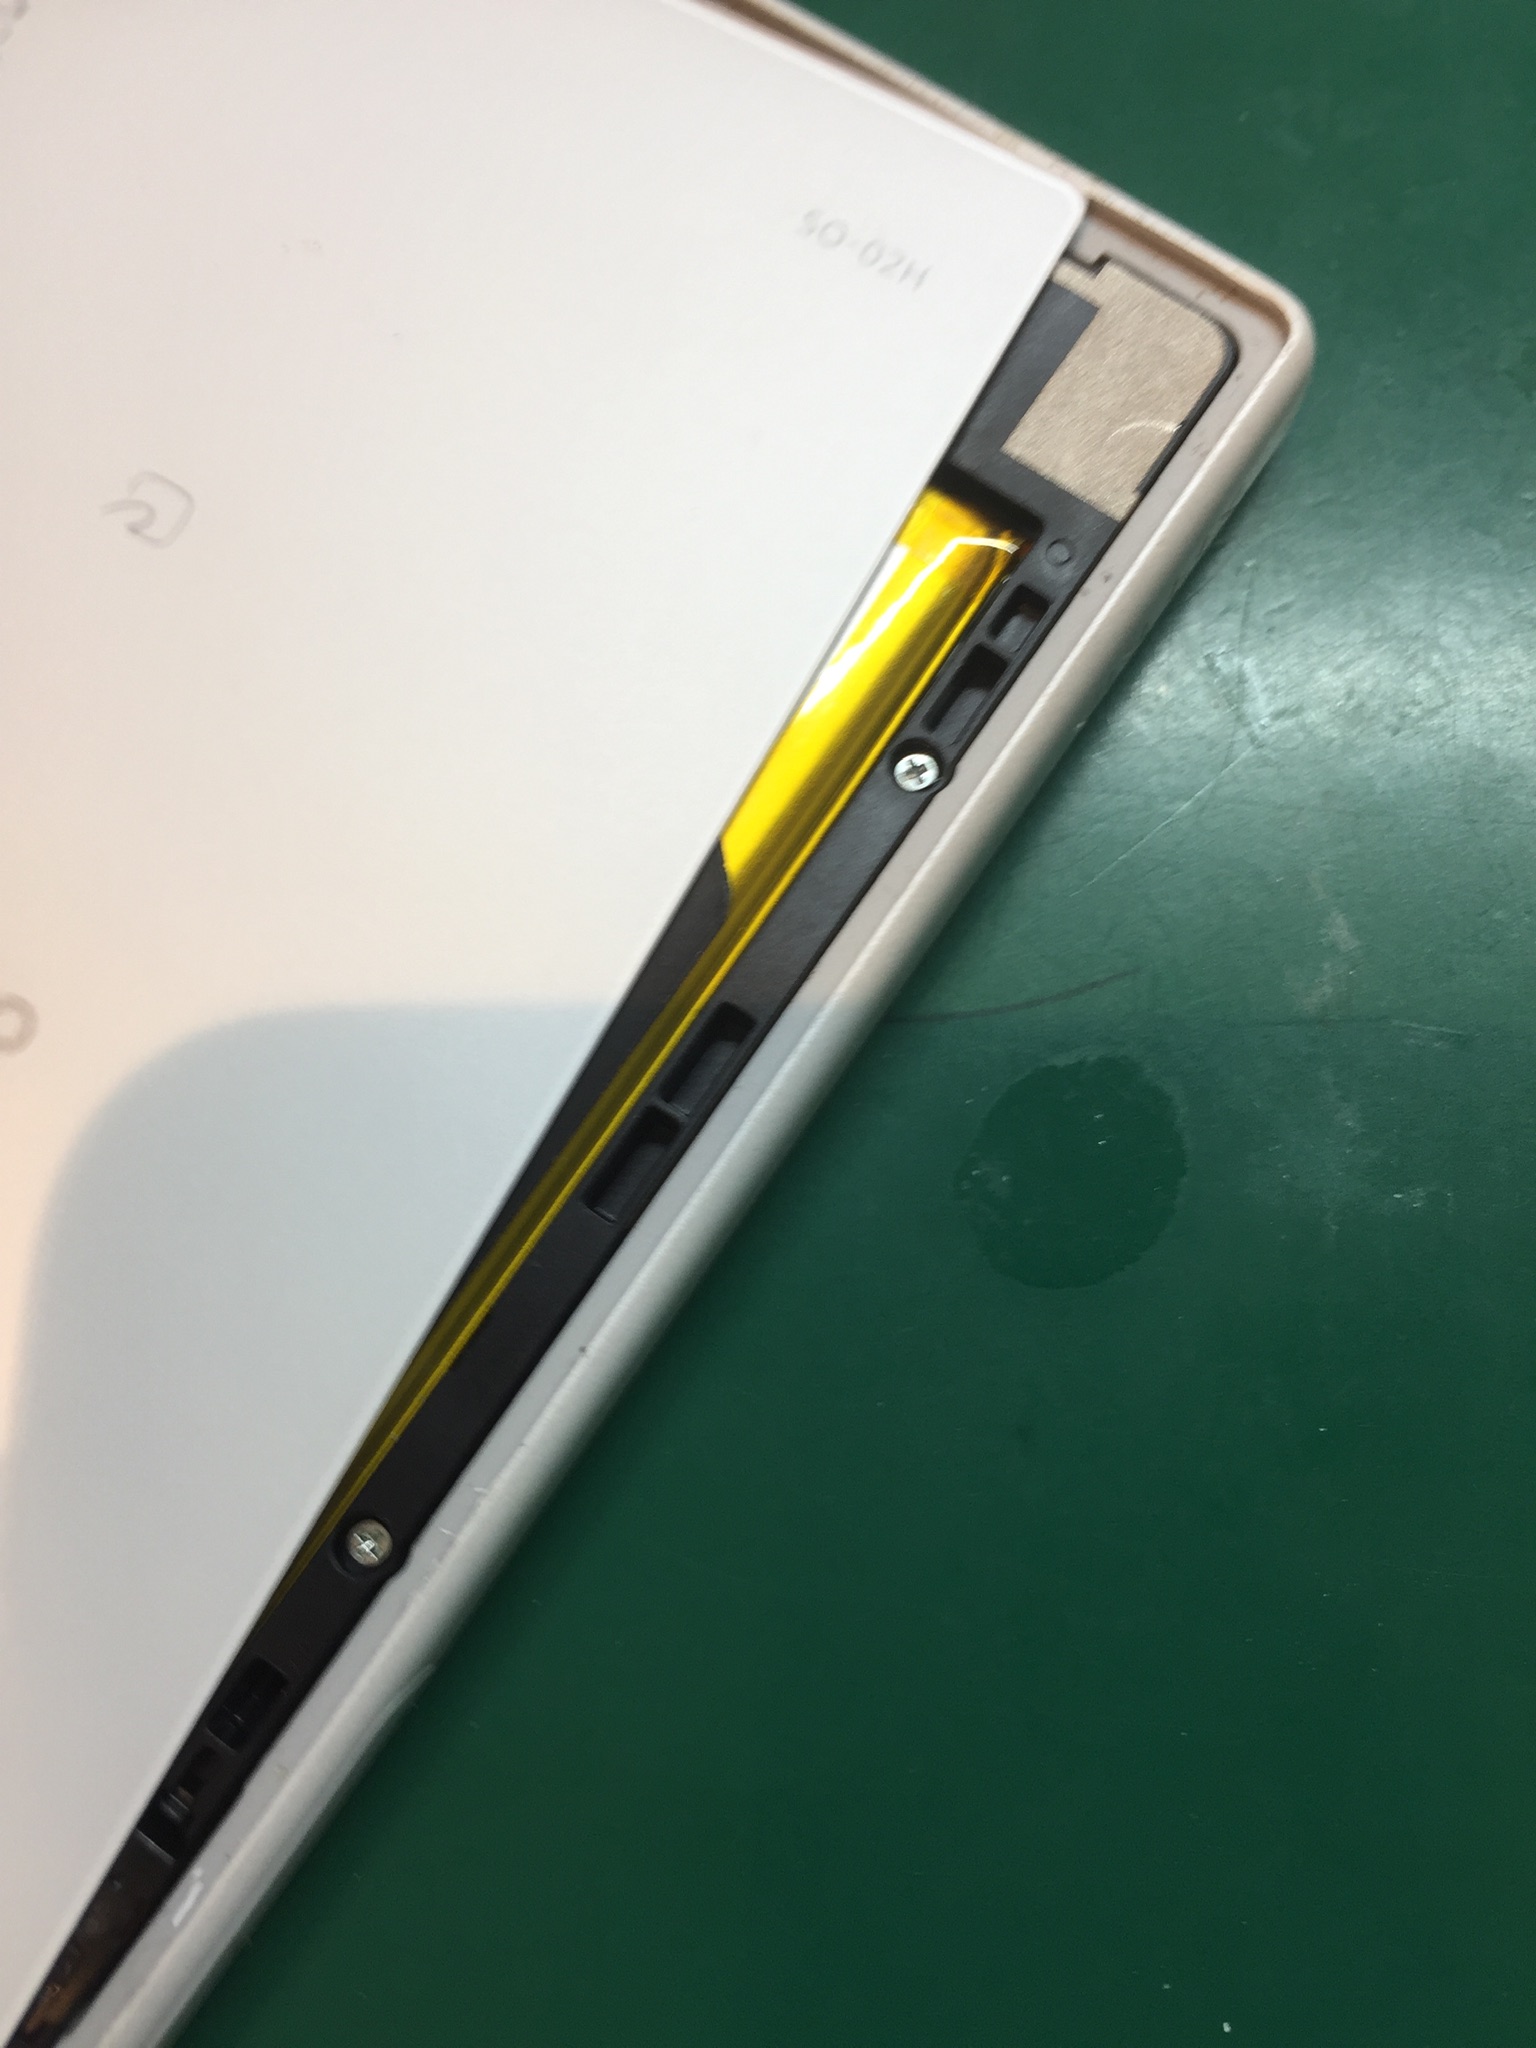 スマートフォンの電源が入らない 原因はバッテリーの故障でした Xperia Z5 Compact So 02h のバッテリー交換 Xperia Galaxy Aquos Zenfone Huawei修理のアンドロイドホスピタル